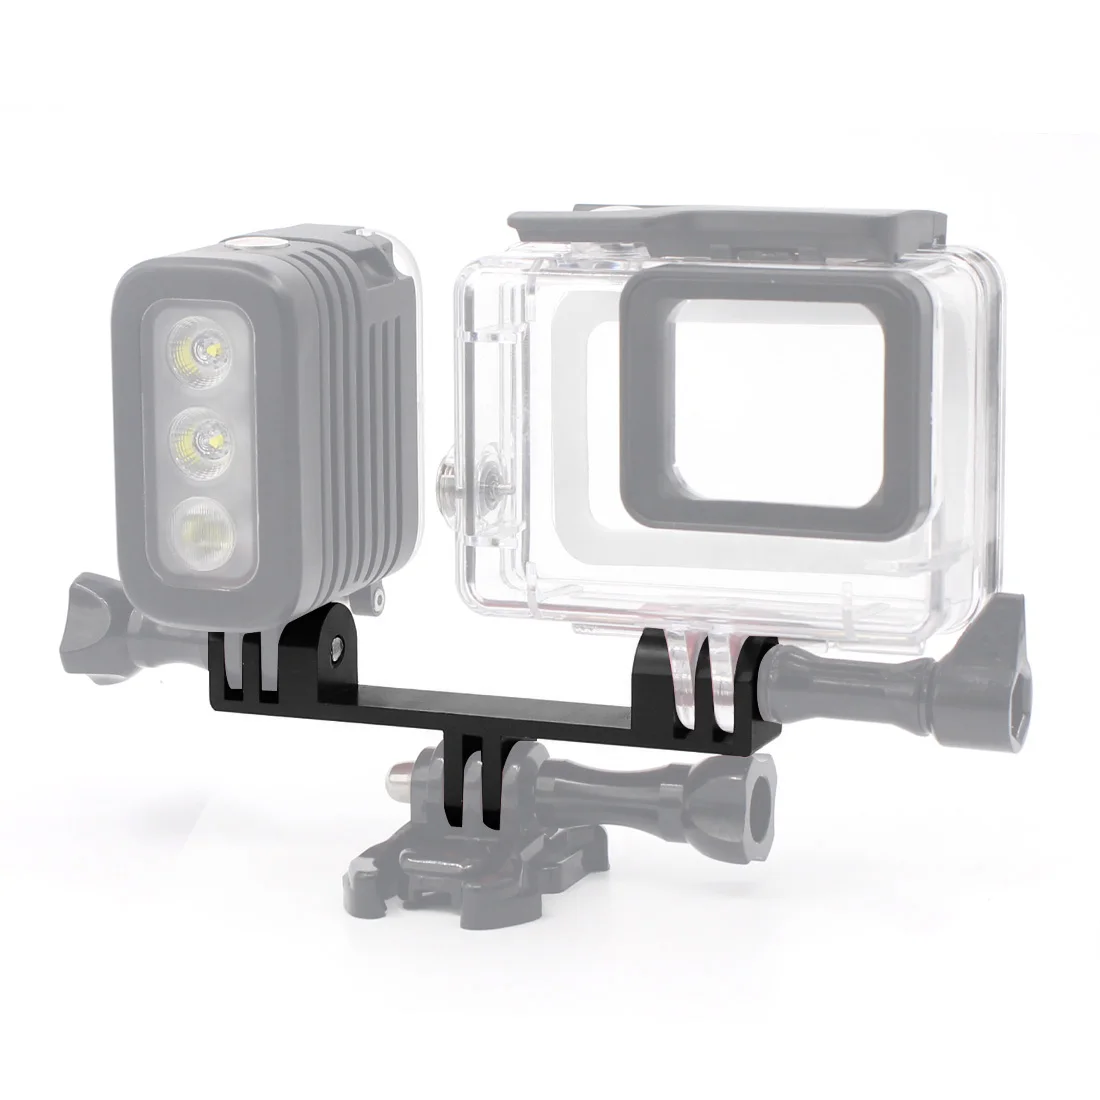 Металлический кронштейн Камера крепления для штатива-трипода подключения сиденье-монопод стенд держатель для экшн-камеры Gopro hero 4s Экшн-камера XIAOYI SJ4000 GitUp Камера Алюминий